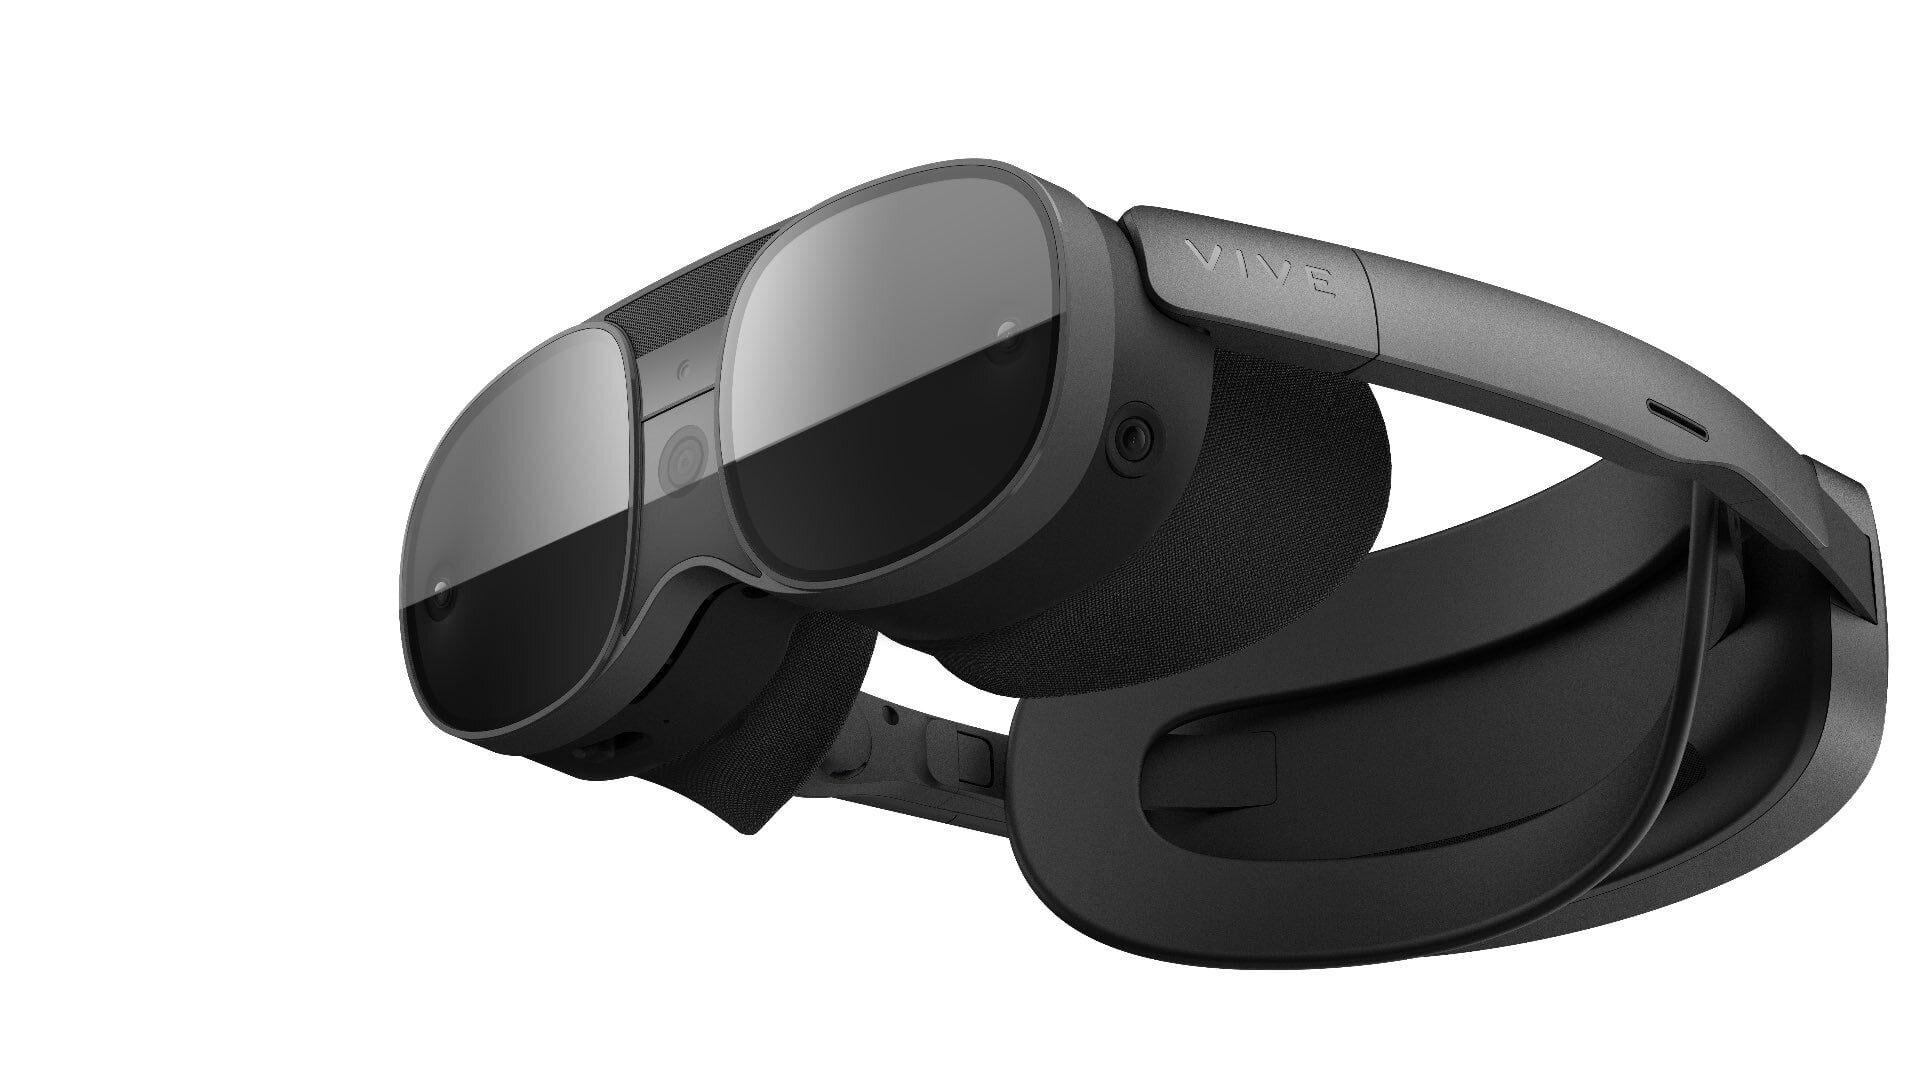 HTCs neues Headset soll „Vive XR Elite“ heißen und 1400 US-Dollar kosten – Bericht